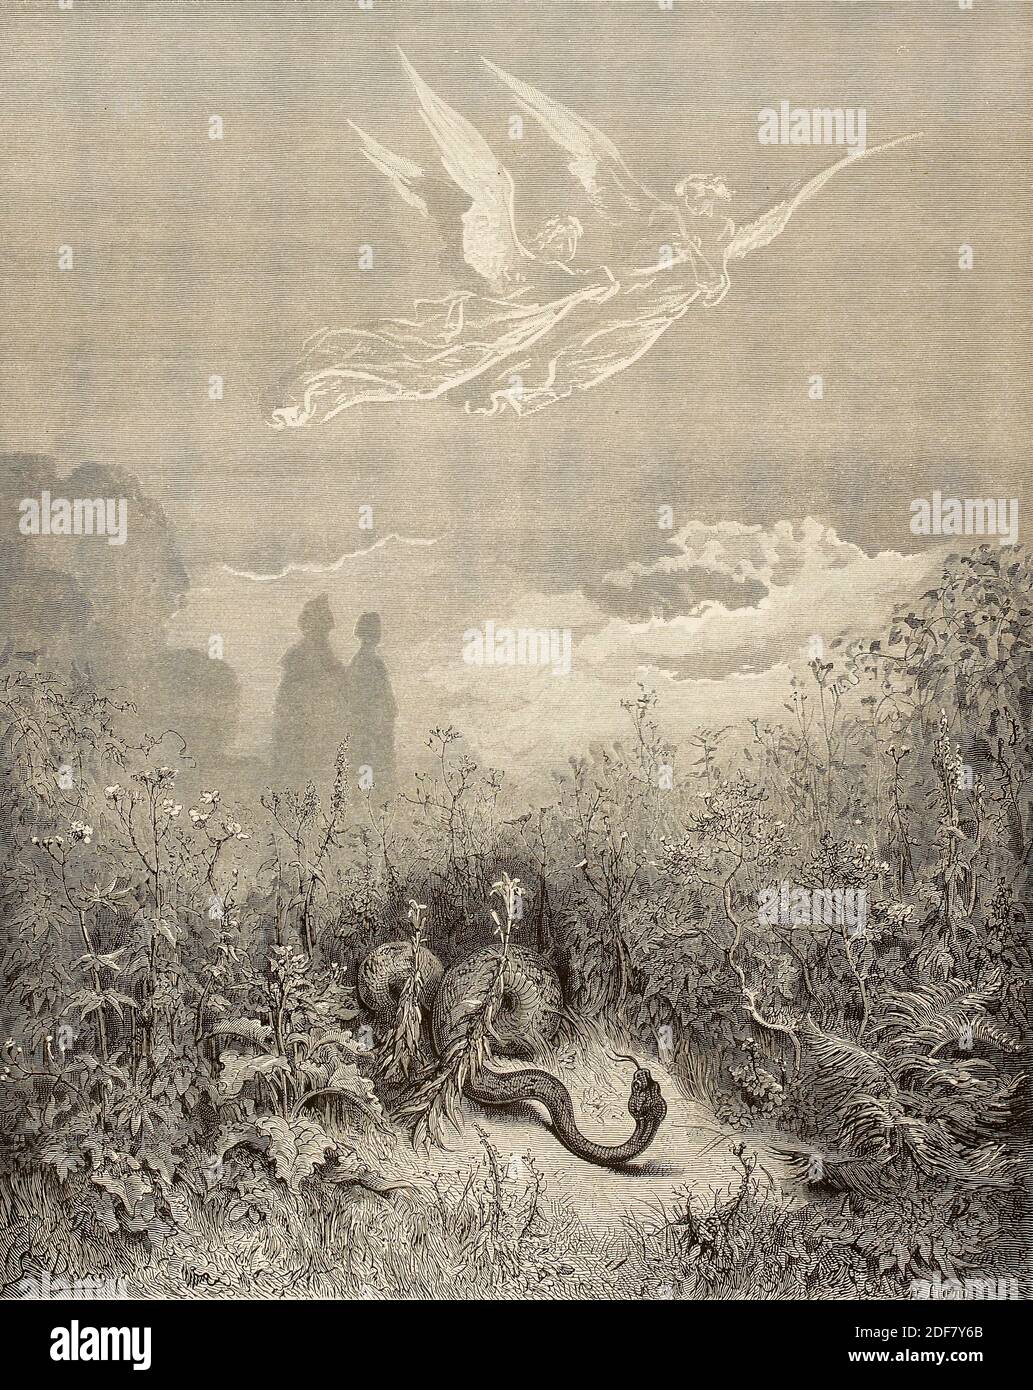 Dante - Divina Commedia - Purgatorio - Illustrazione di Gustave Dorè - canto VIII - il serpente Foto Stock